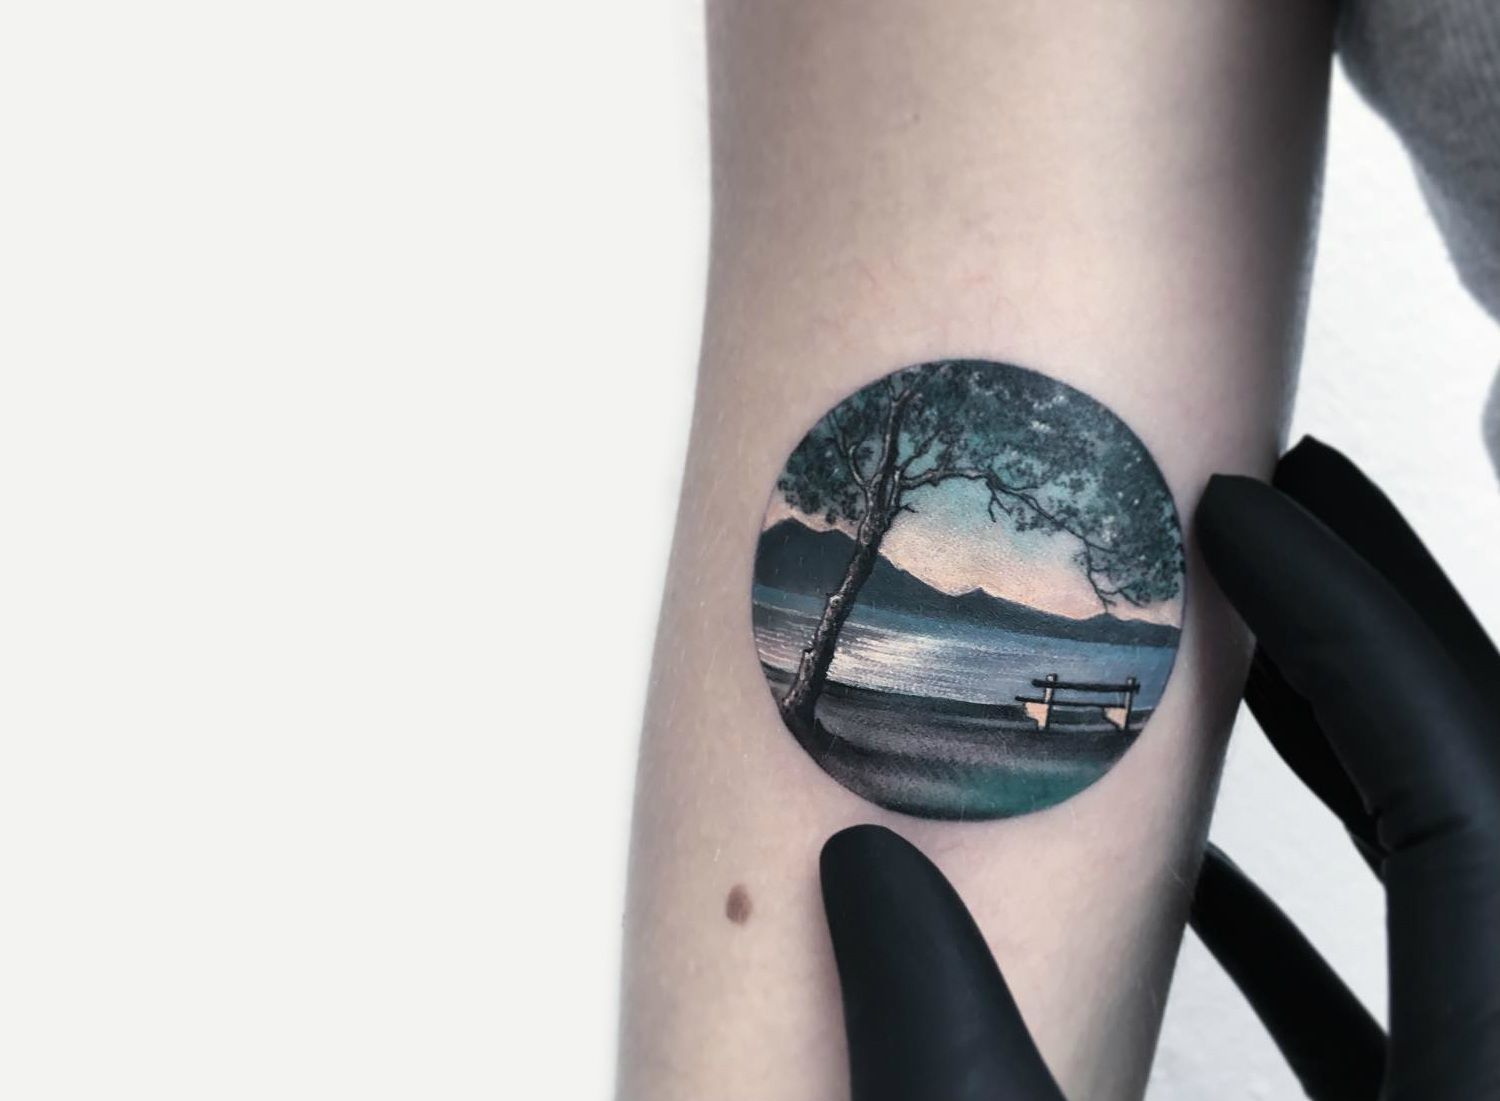 Minimalist Tattoo Ideas on X: "#tattoo #minimalisttattoo #naturetattoo https://t.co/6uWoH7akwV https://t.co/Ns4re6rLrJ" / X